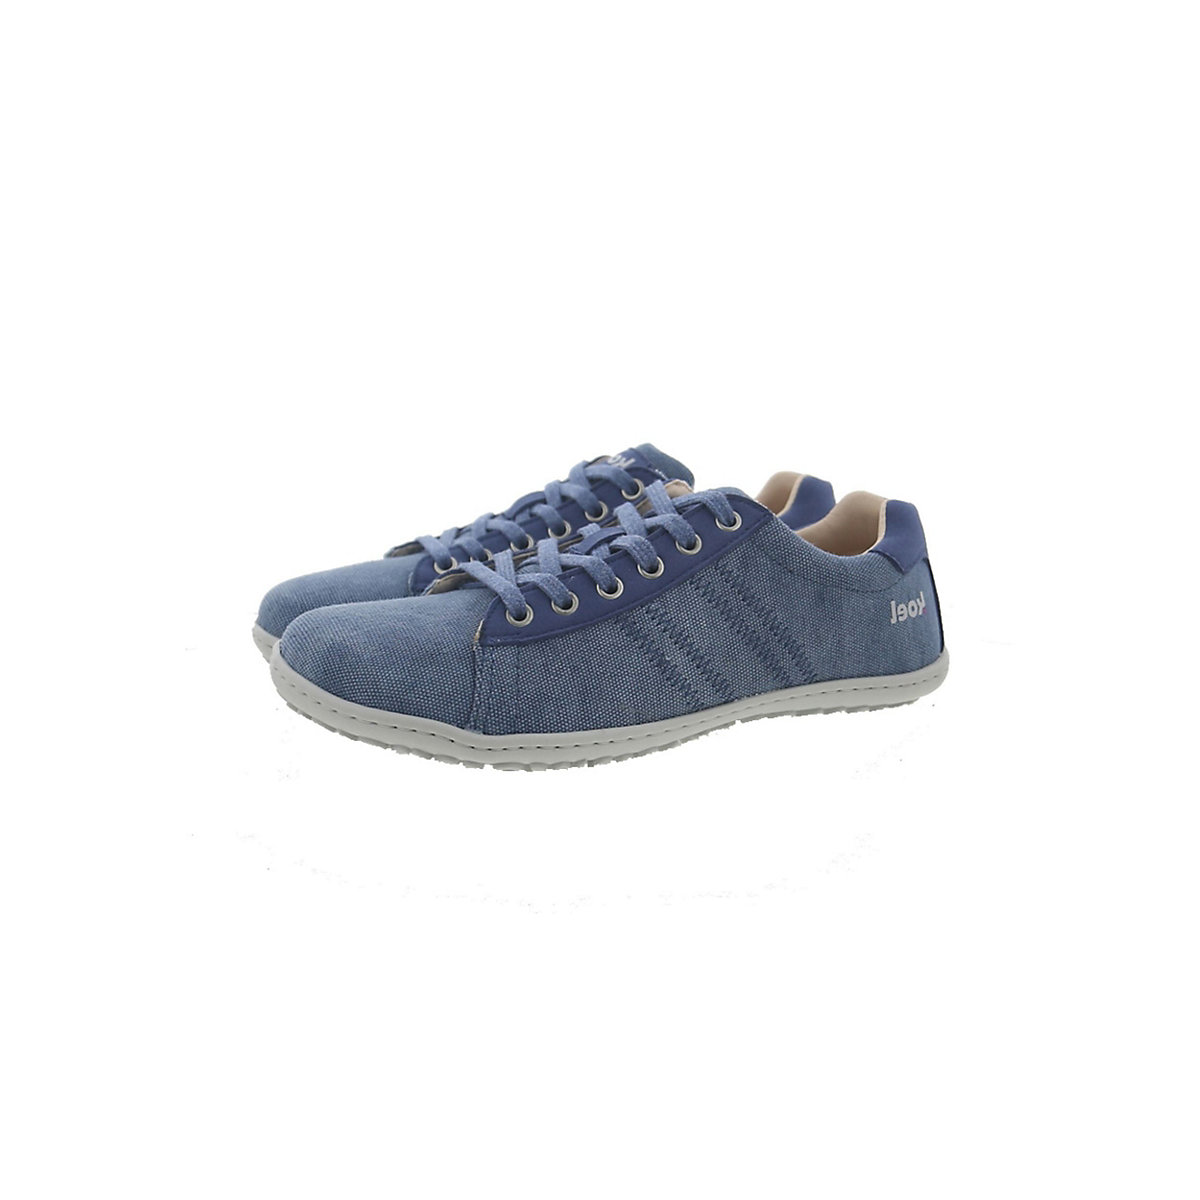 KOEL IVANNA 2 VEGAN 25L001.508-110 Sneakers Low blau